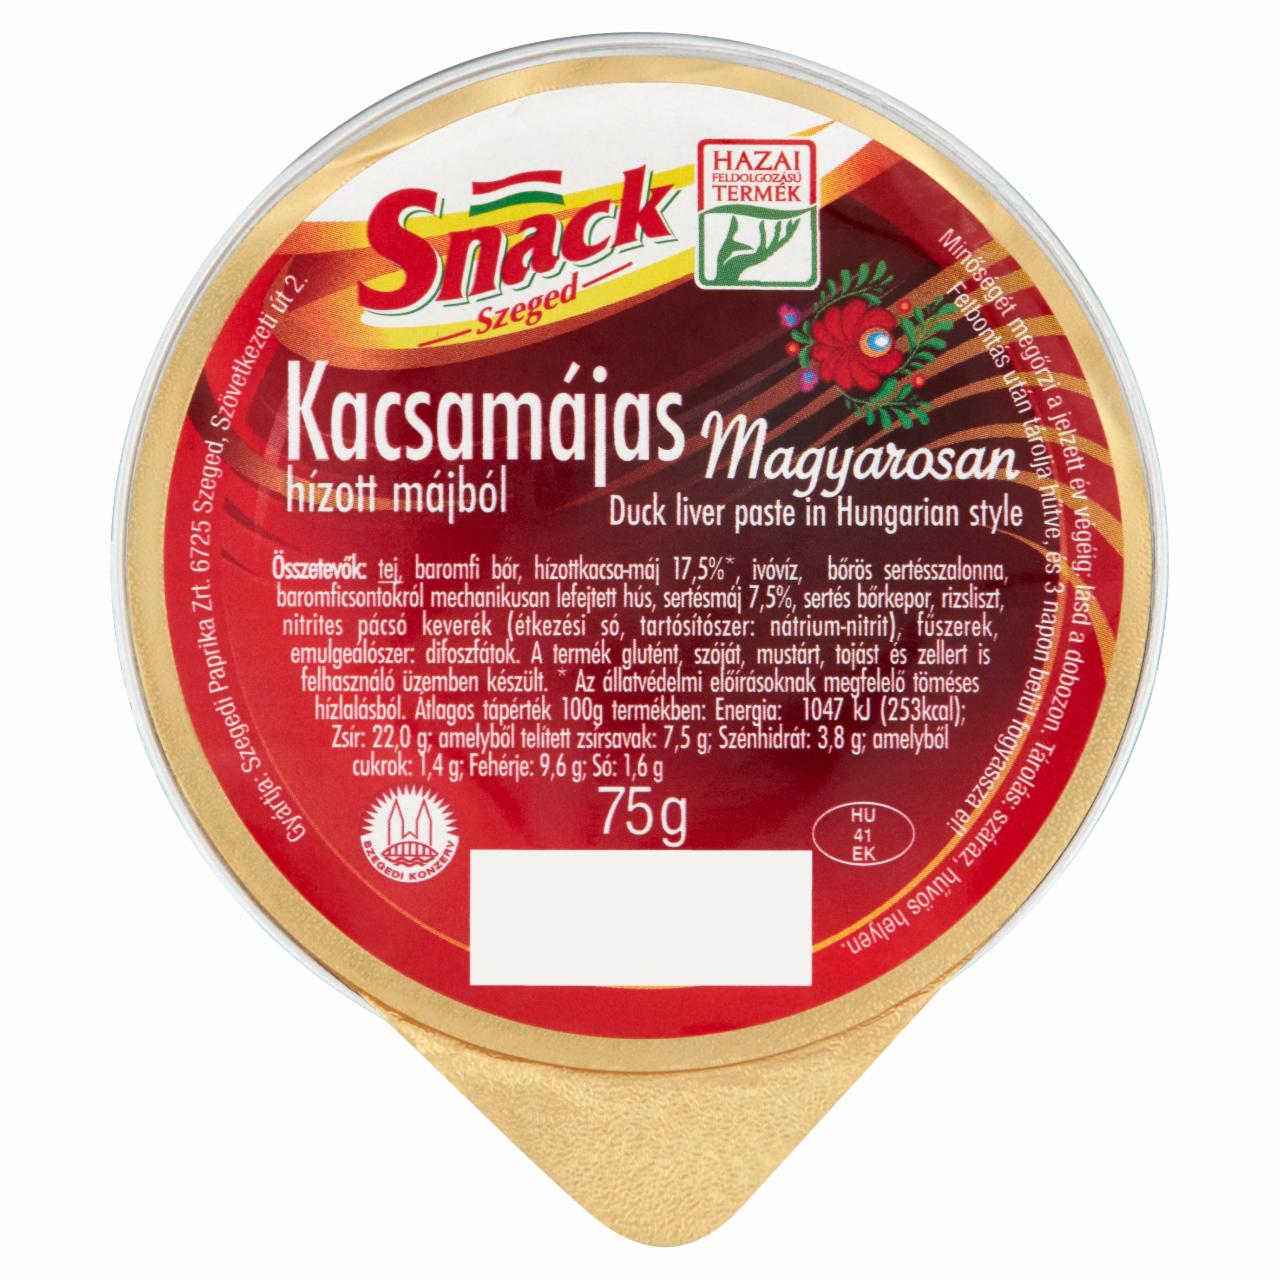 Képek - Snack Szeged kacsamájas hízott májból magyarosan 75 g